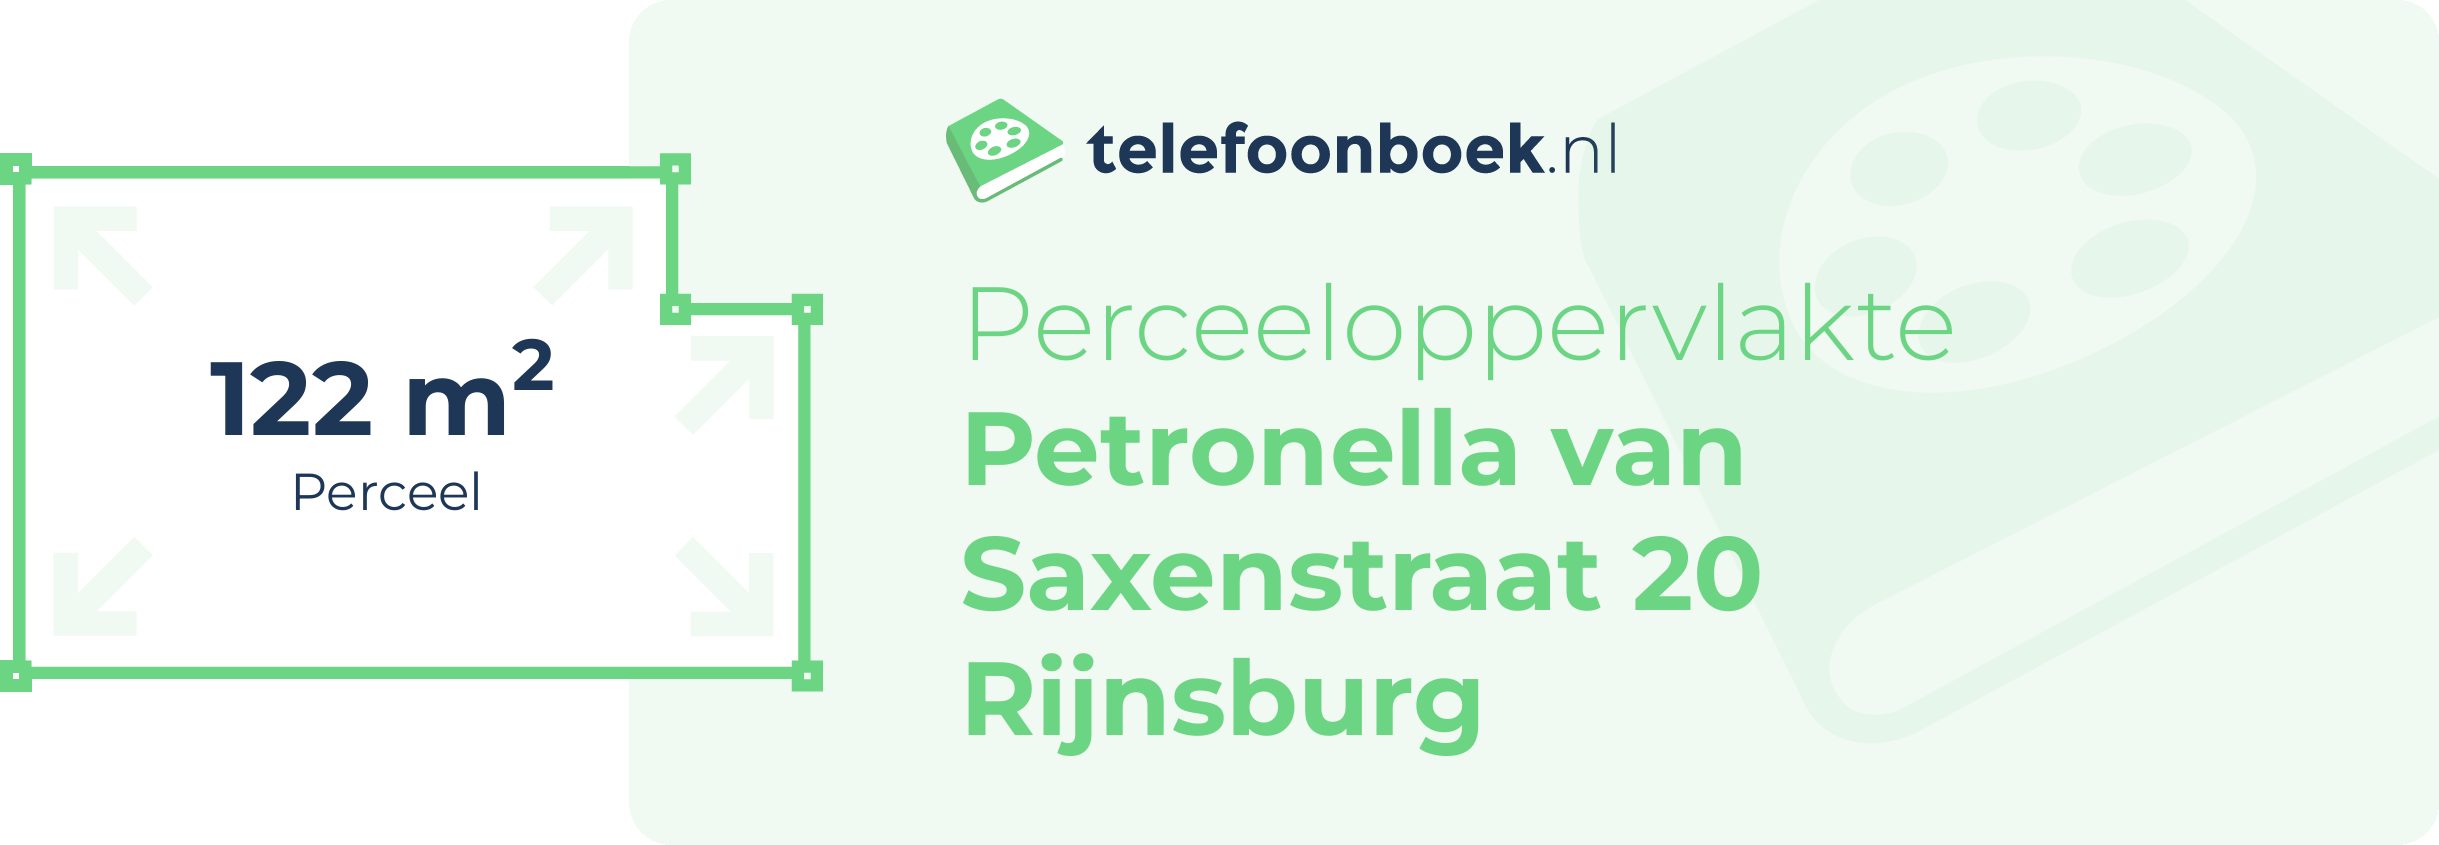 Perceeloppervlakte Petronella Van Saxenstraat 20 Rijnsburg